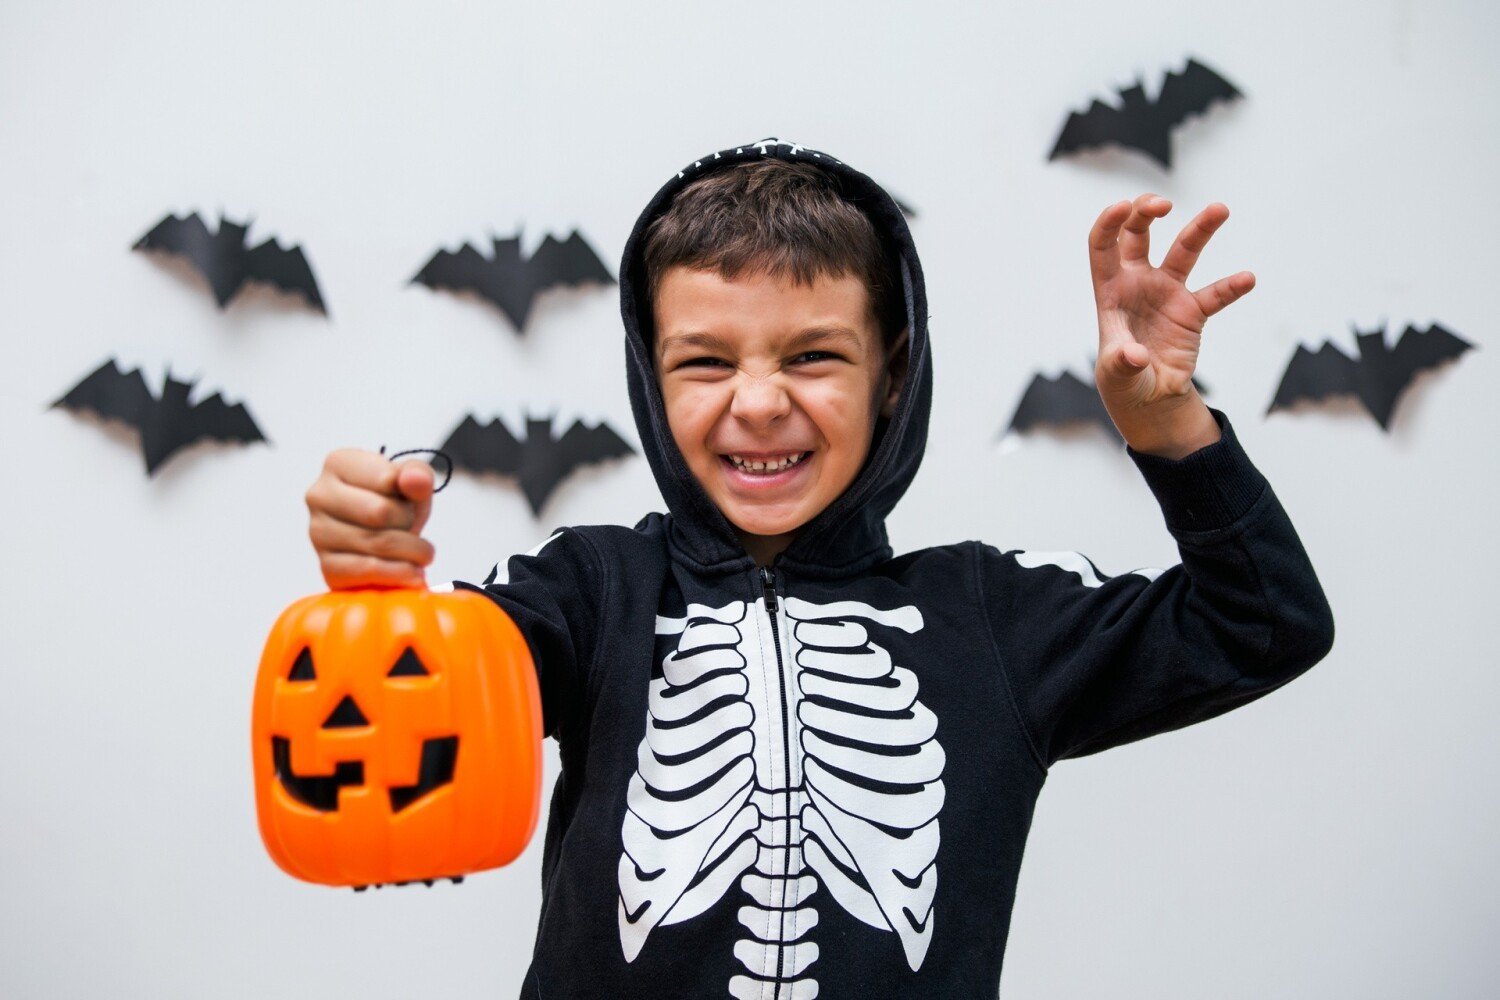 Przebranie na Halloween: pomysły na kostium dla chłopca | Warszawa Nasze  Miasto